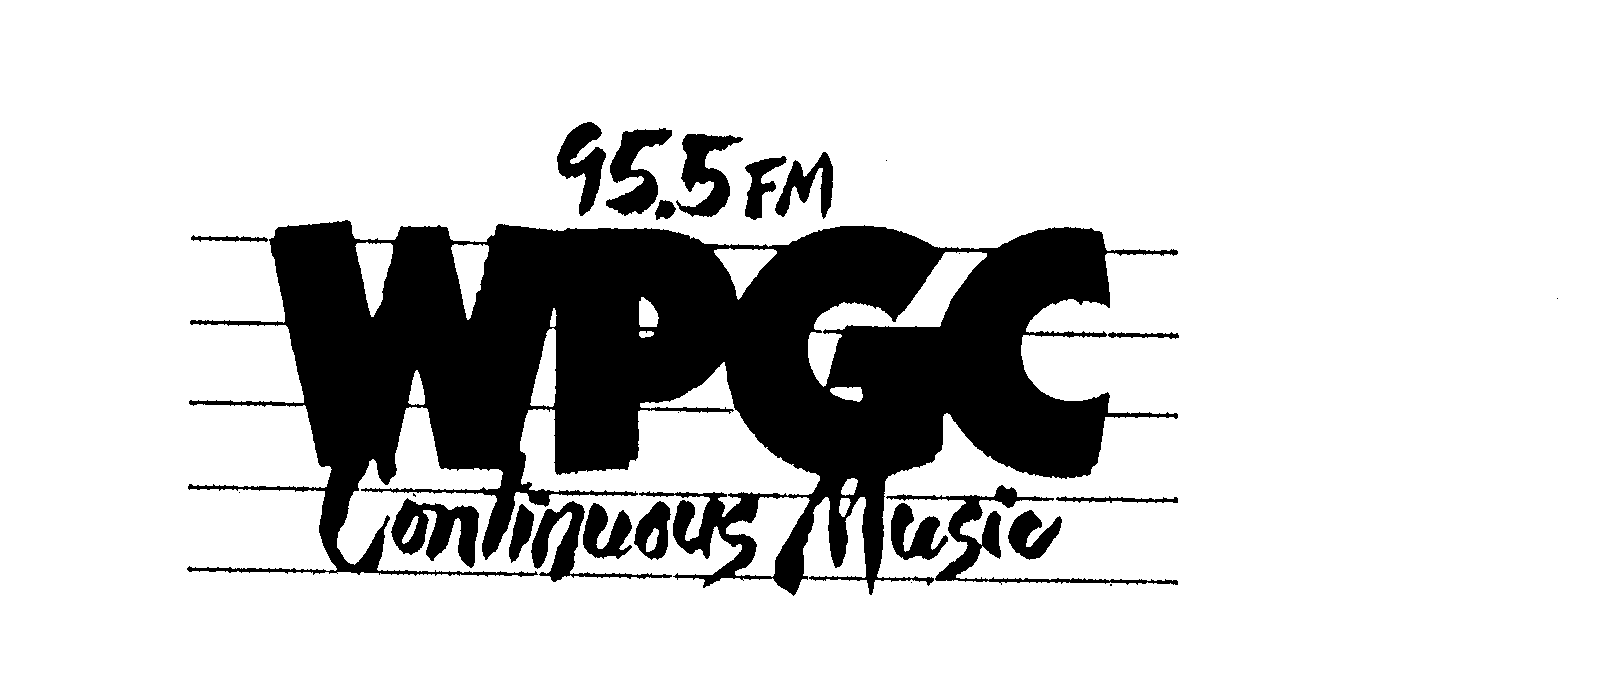 Trademark Logo 95.5 FM WPGC CONTINUOUS MUSIC